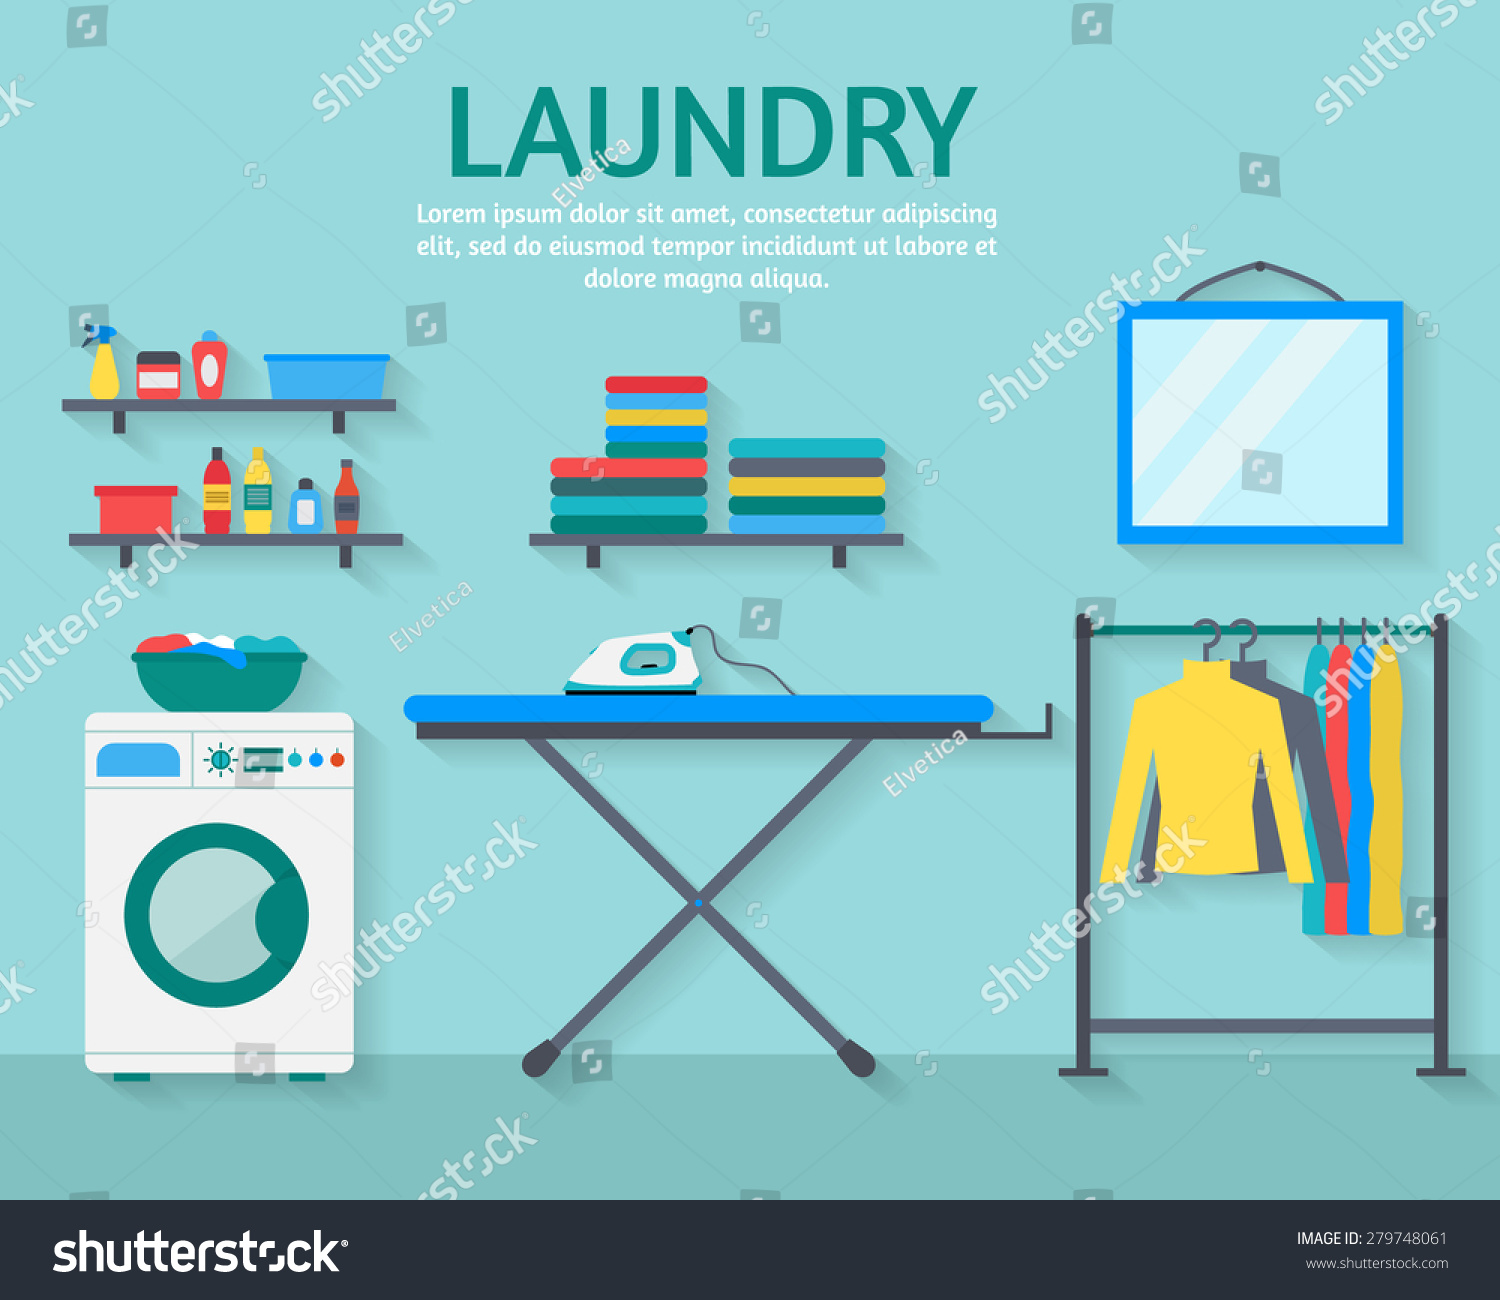 laundry room clip art free - photo #41